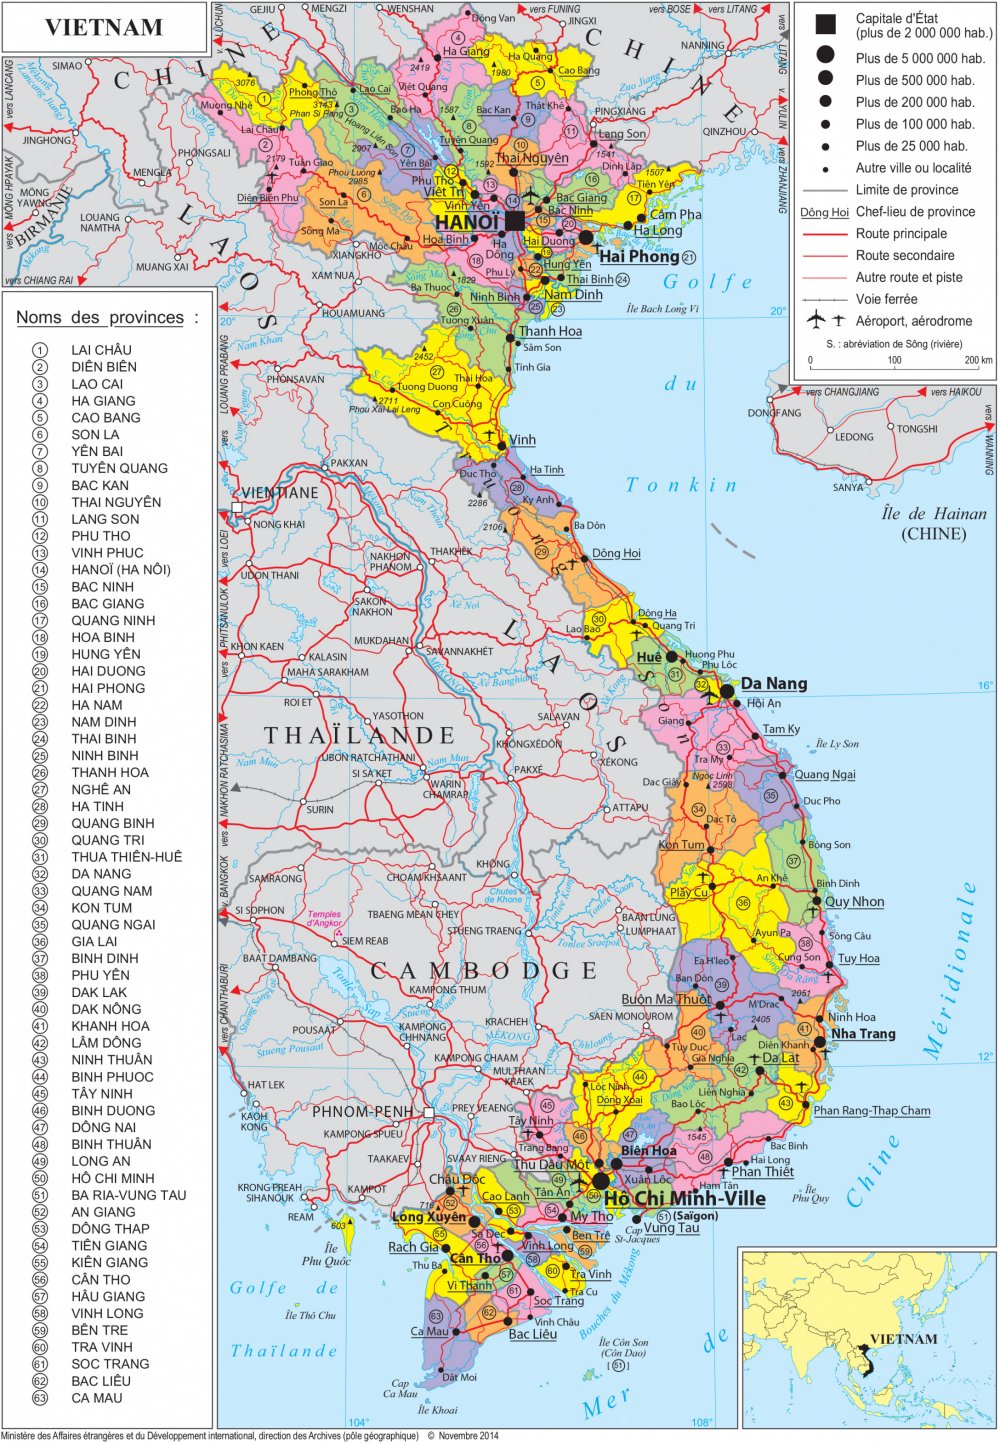 Cập nhật hình ảnh bản đồ mới nhất để tìm hiểu đất nước Việt Nam. Từ các địa danh nổi tiếng đến những vùng đất còn hoang sơ, hãy trải nghiệm ngay hôm nay để khám phá vẻ đẹp tuyệt vời của đất nước.